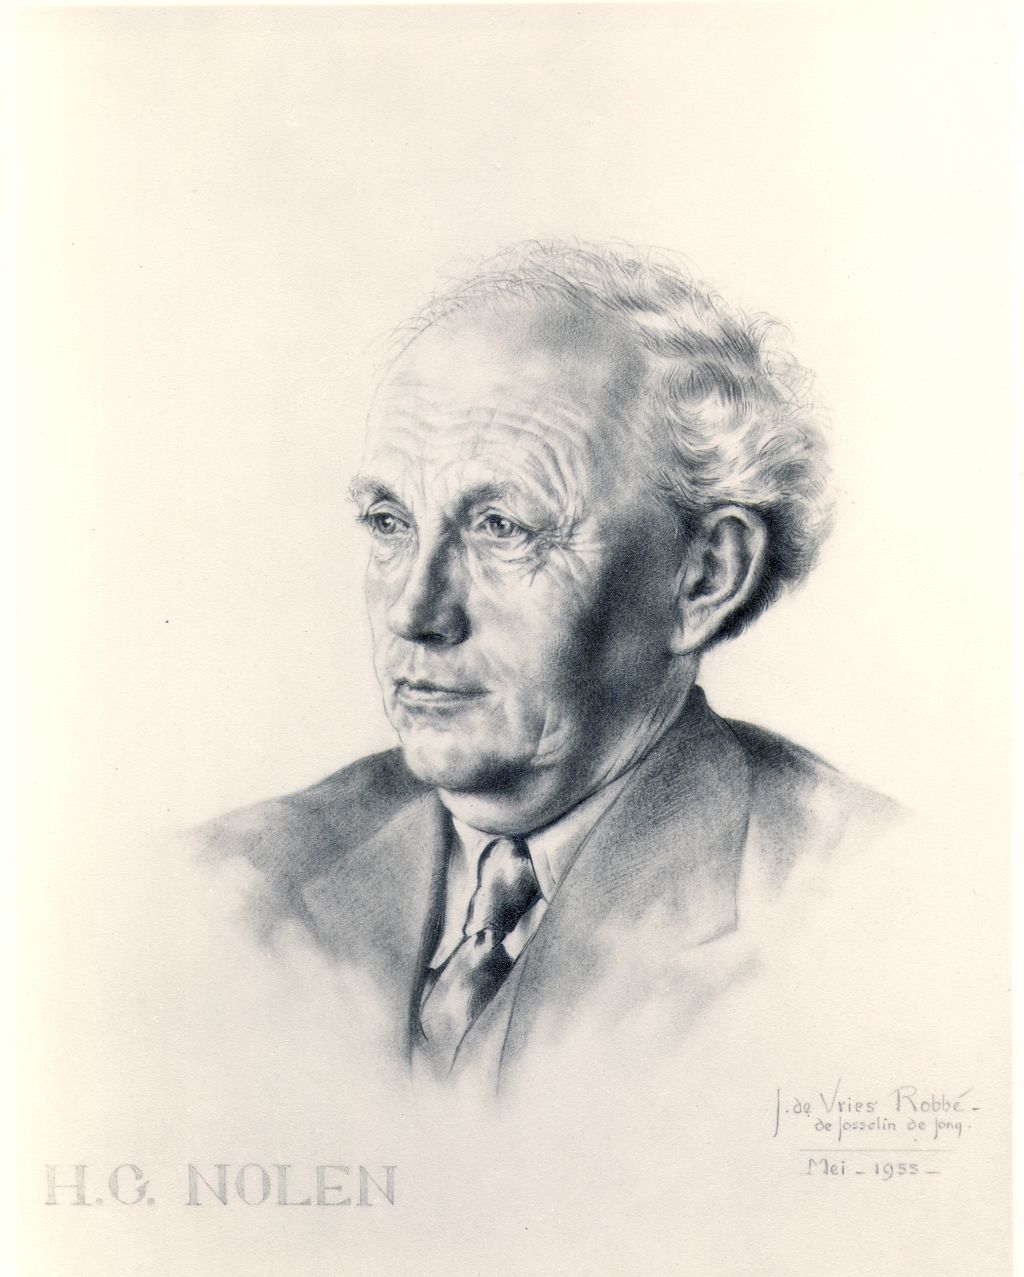 Prof.H.G. Nolen